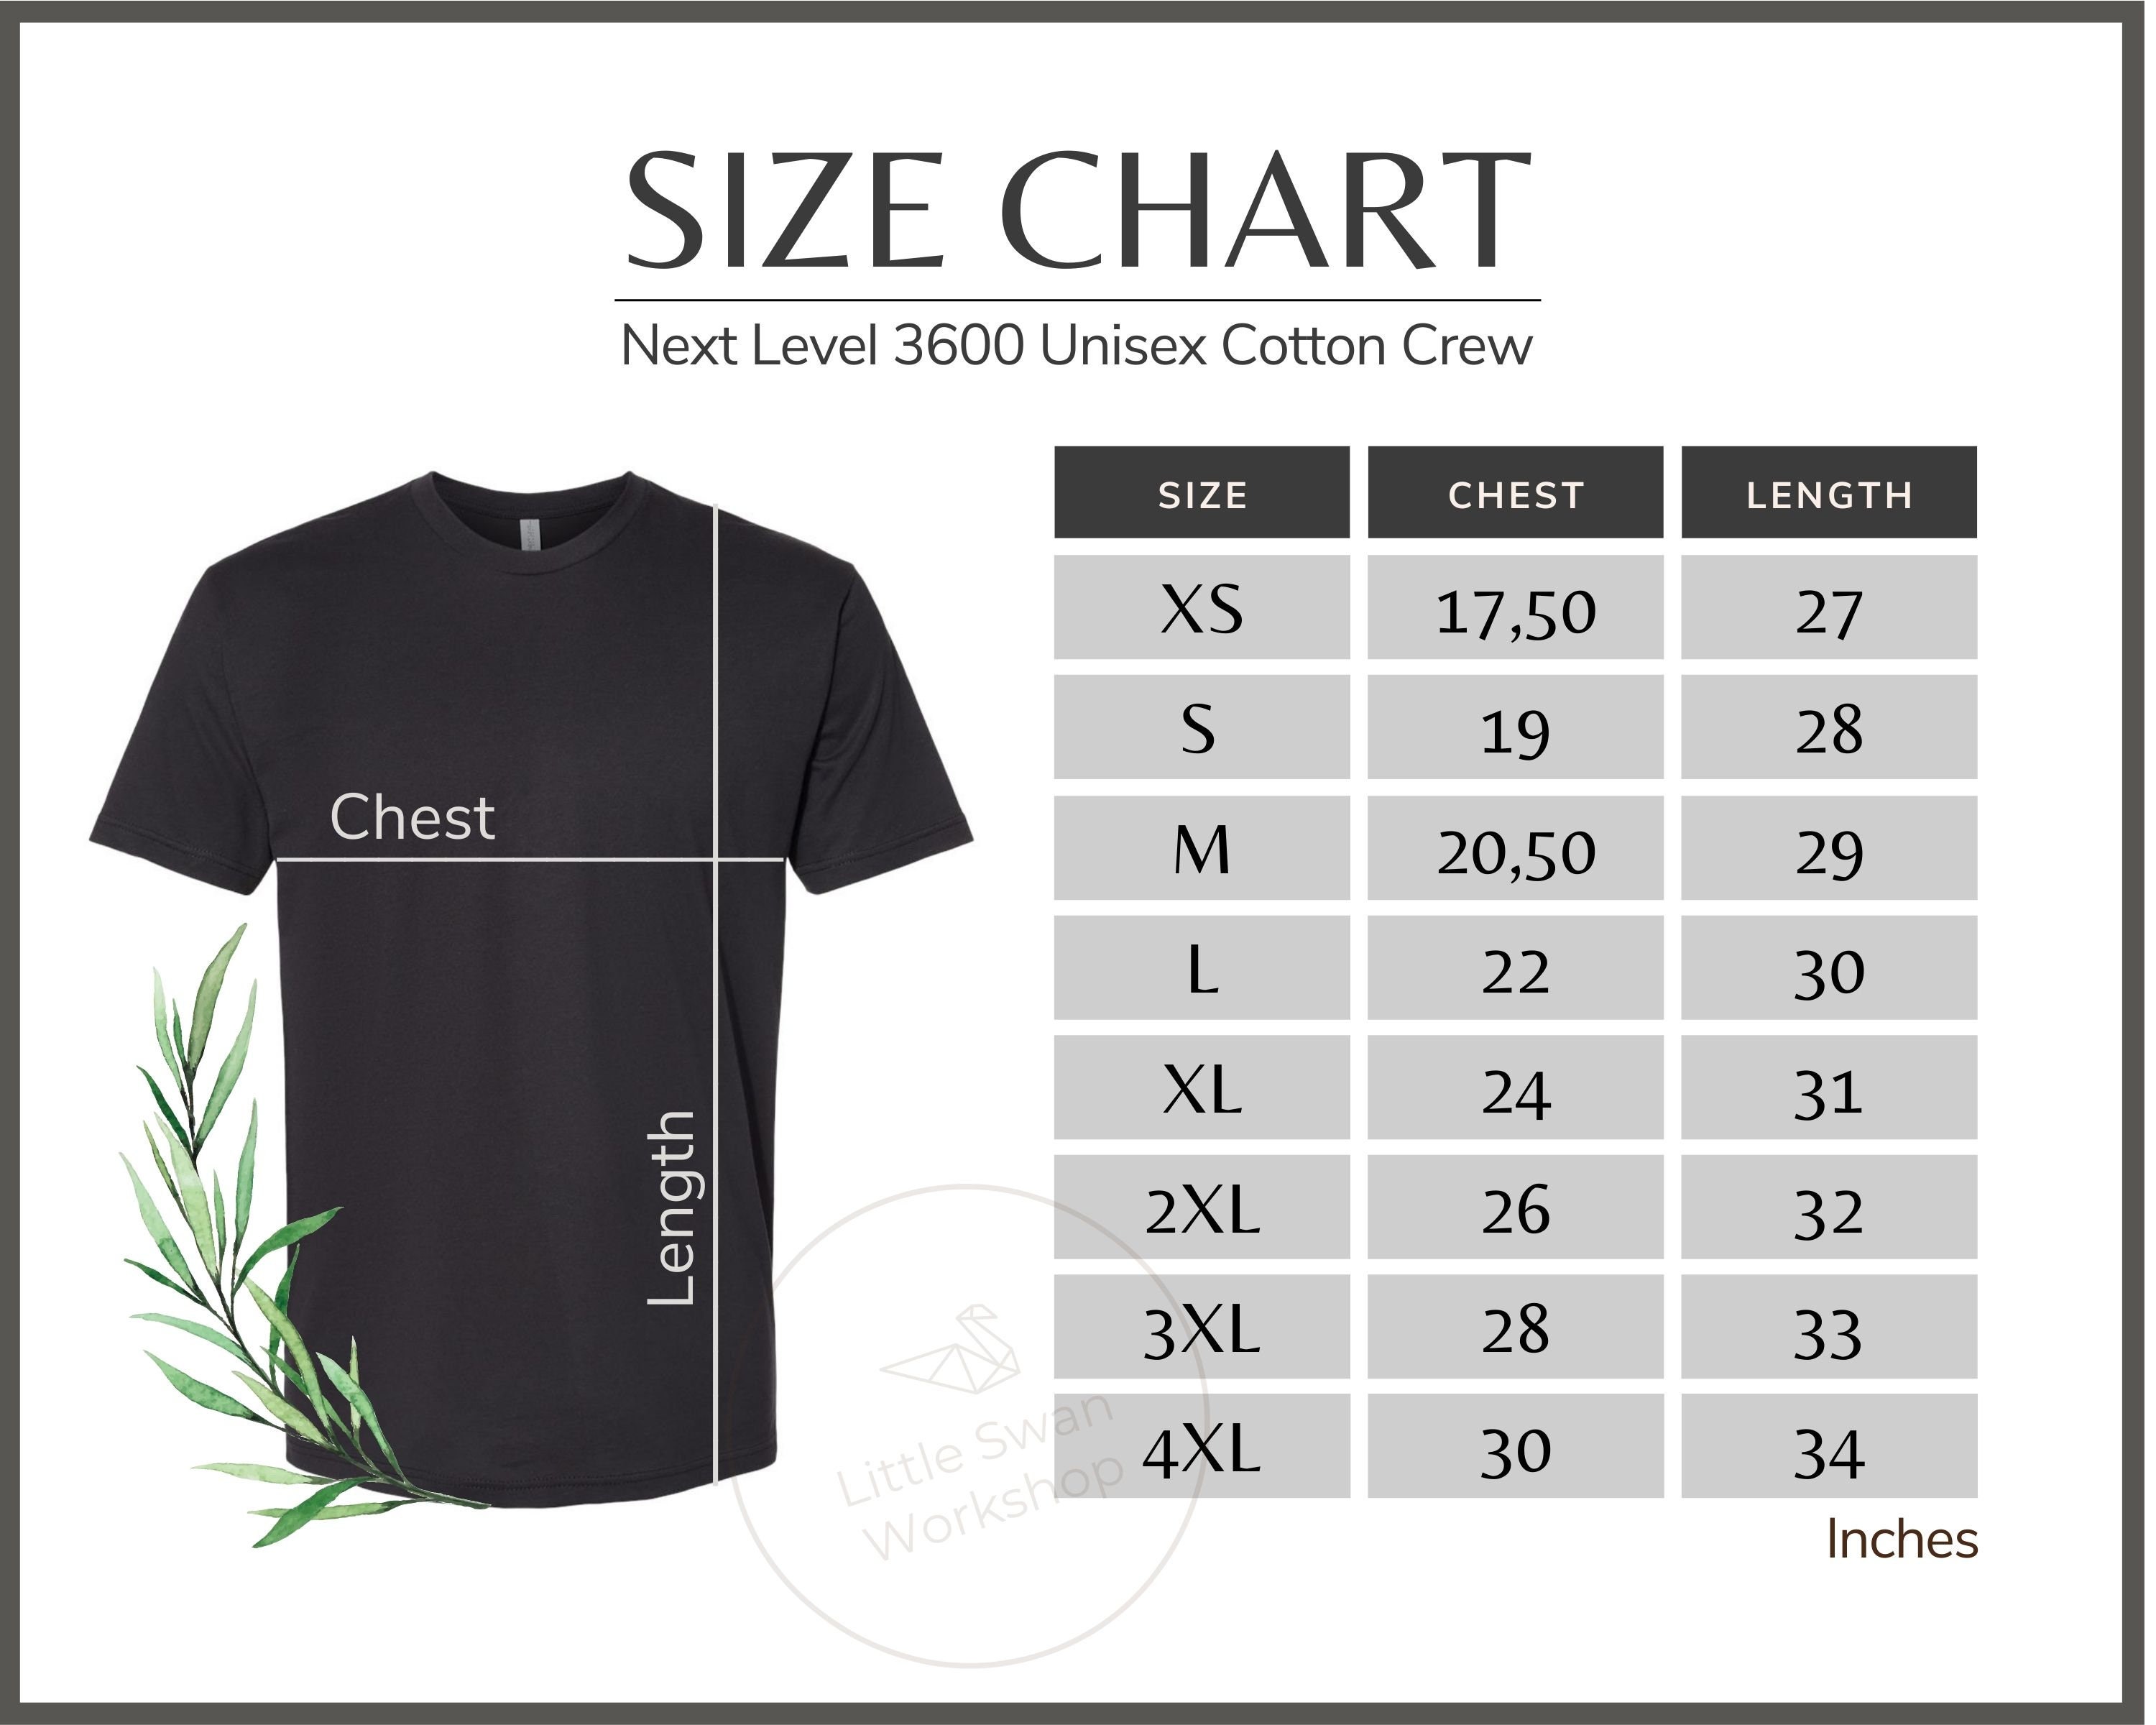 Next Level 3600 Size Chart Next Level 3600 Unisex Crew Next Level 3600 ...